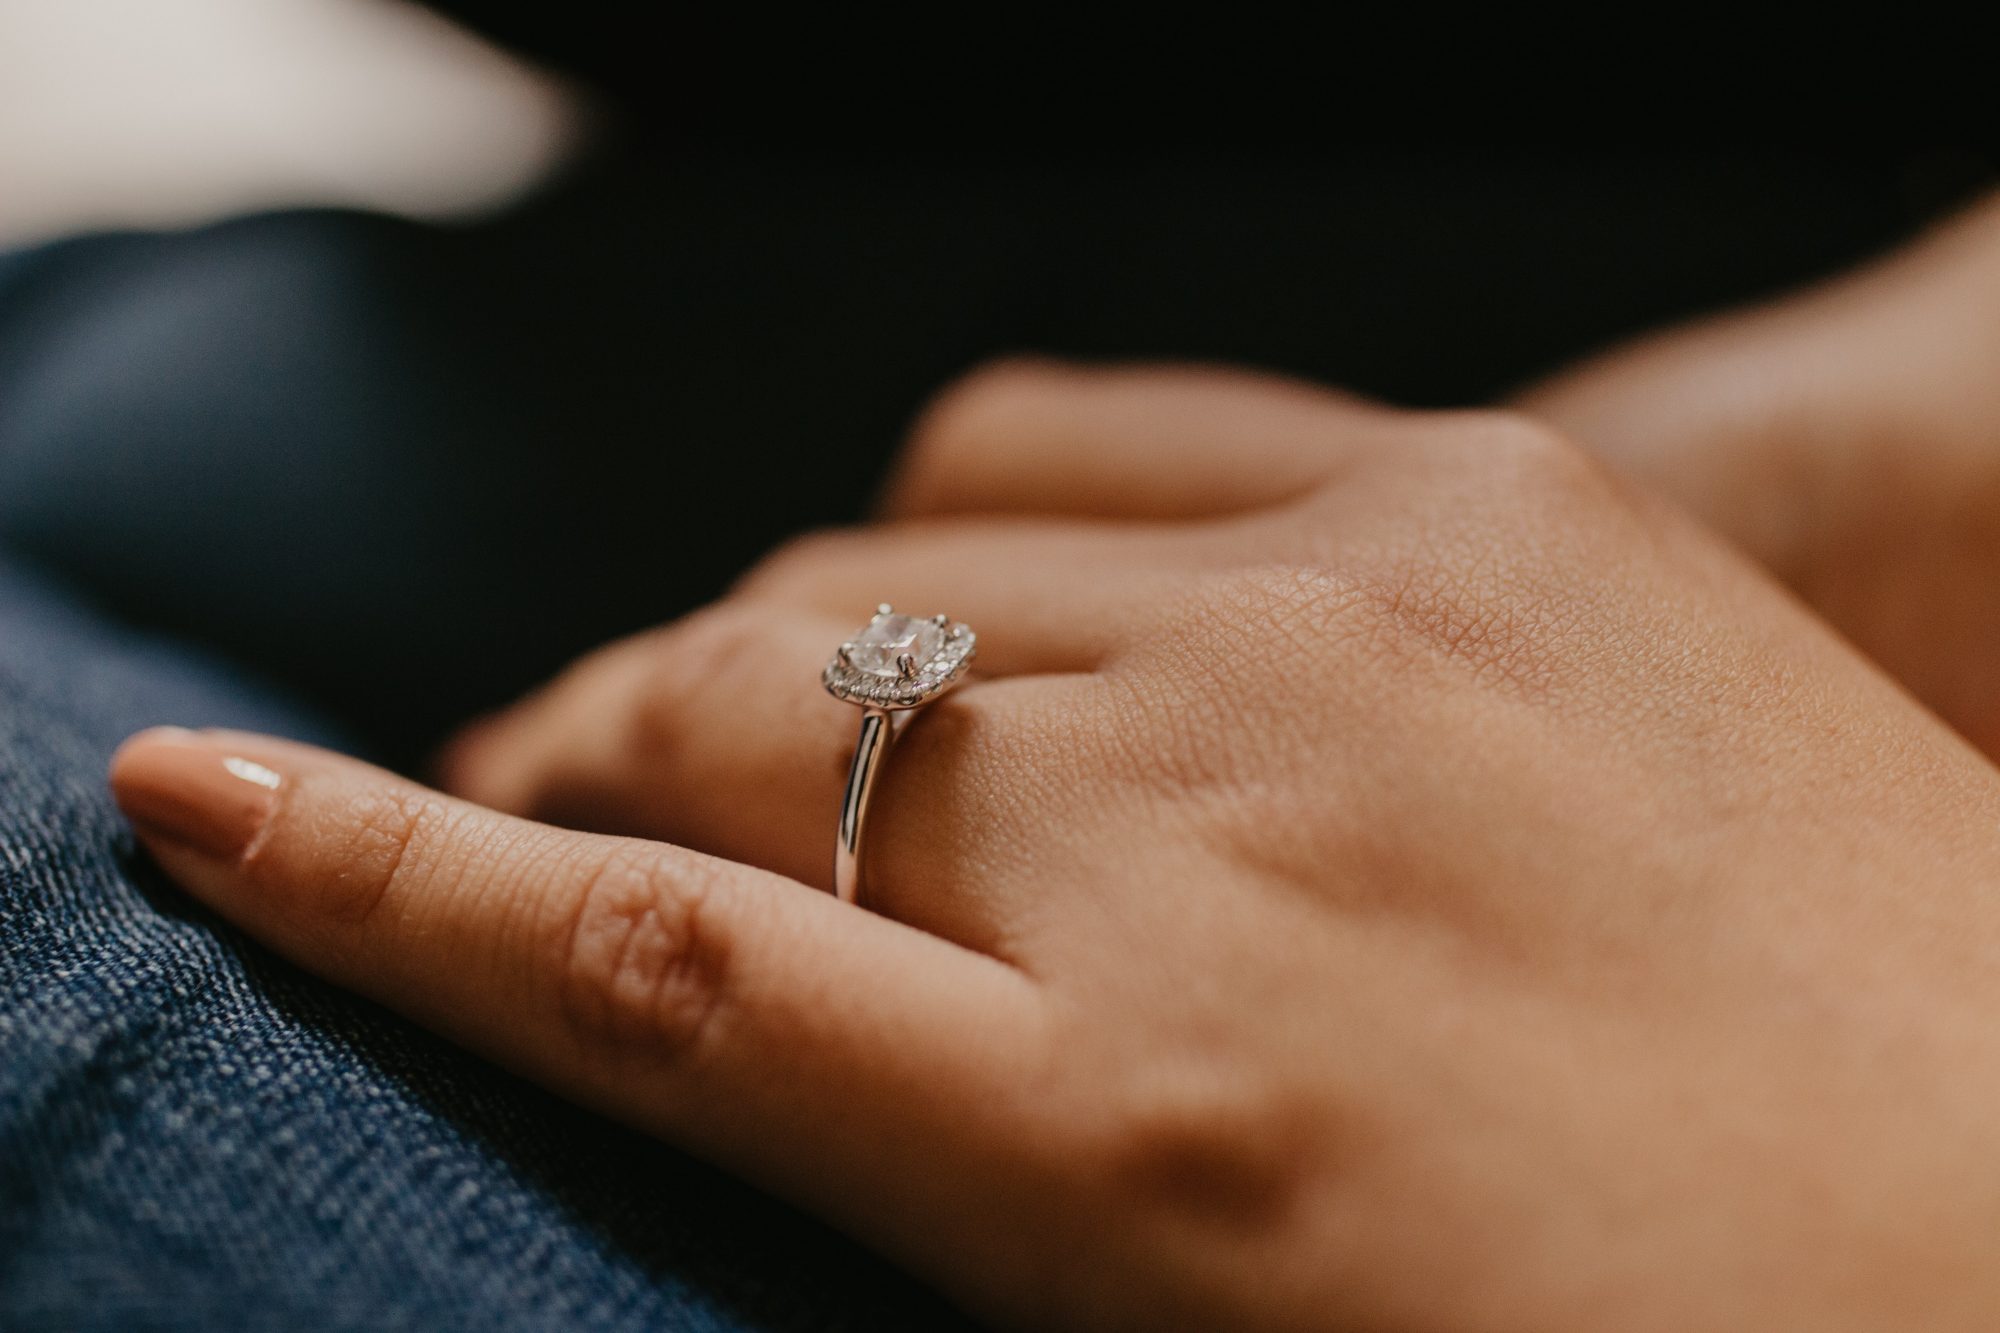 Closeup of hand wearing wedding ring